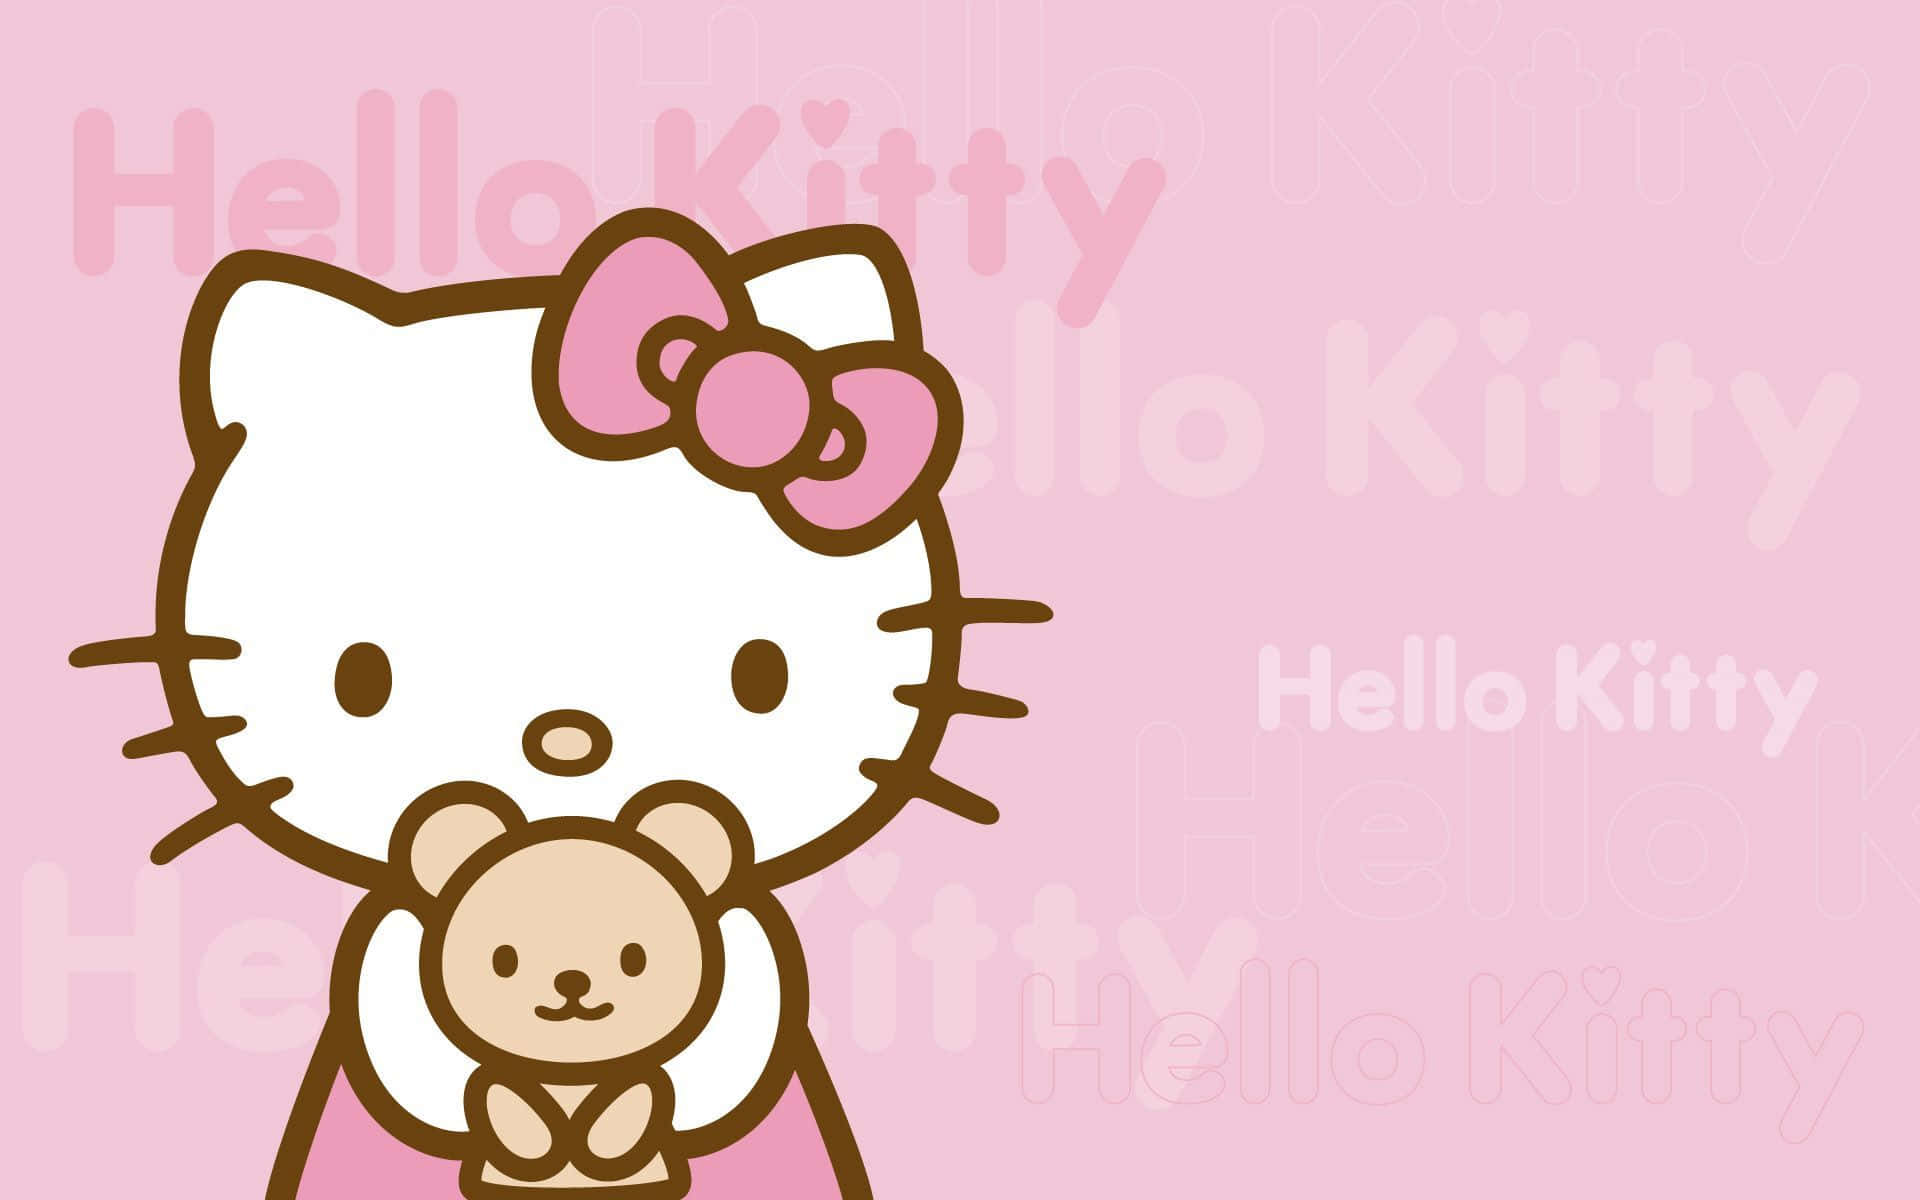 Bereit,spaß Mit Dem Hello Kitty Pc Zu Haben! Wallpaper